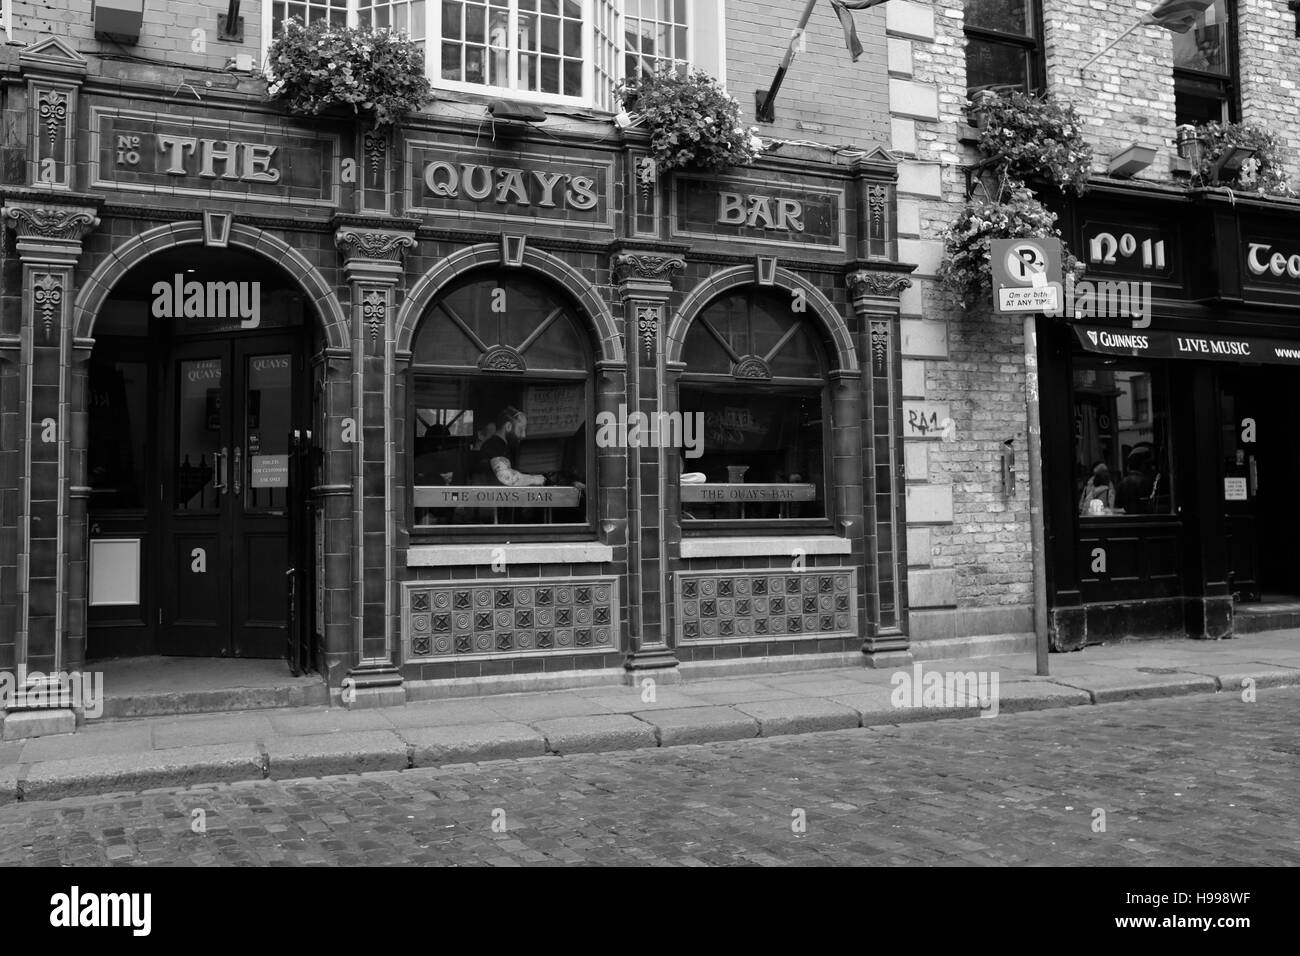 Die Quays Bar ist eine der vielen Bars in der touristischen Temple Bar Gegend von Dublin. Stockfoto